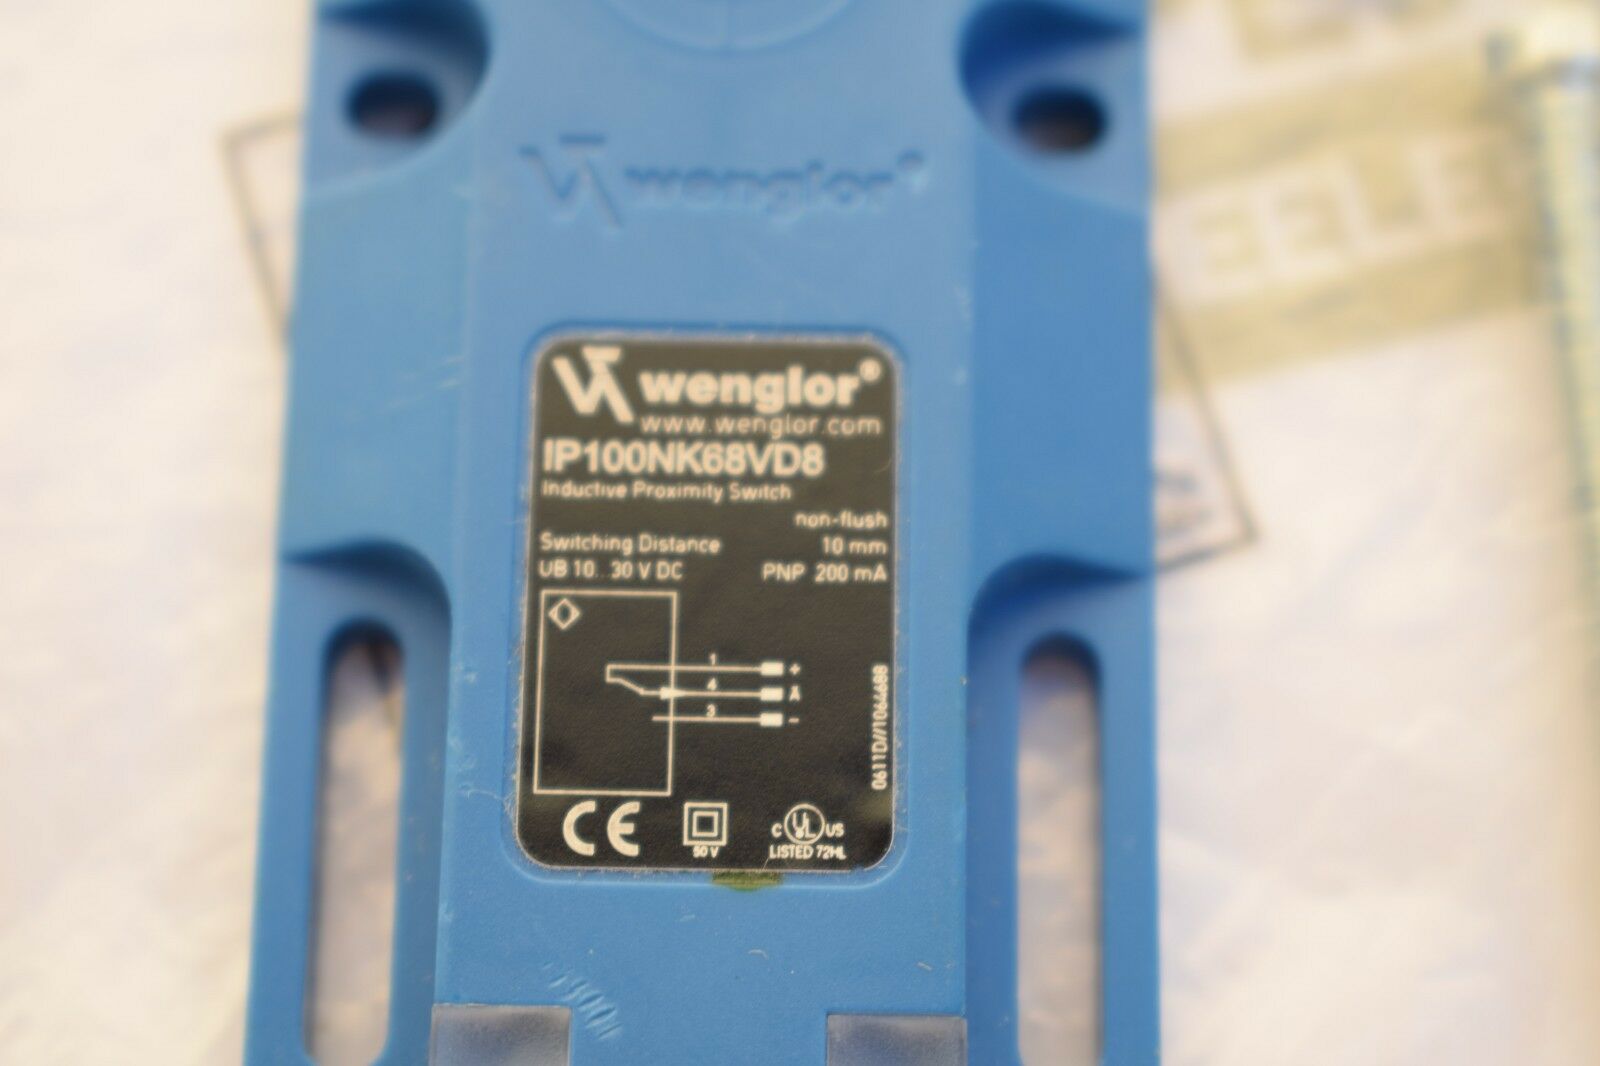 Wenglor Induktiver Sensor IP100NK68VD8 